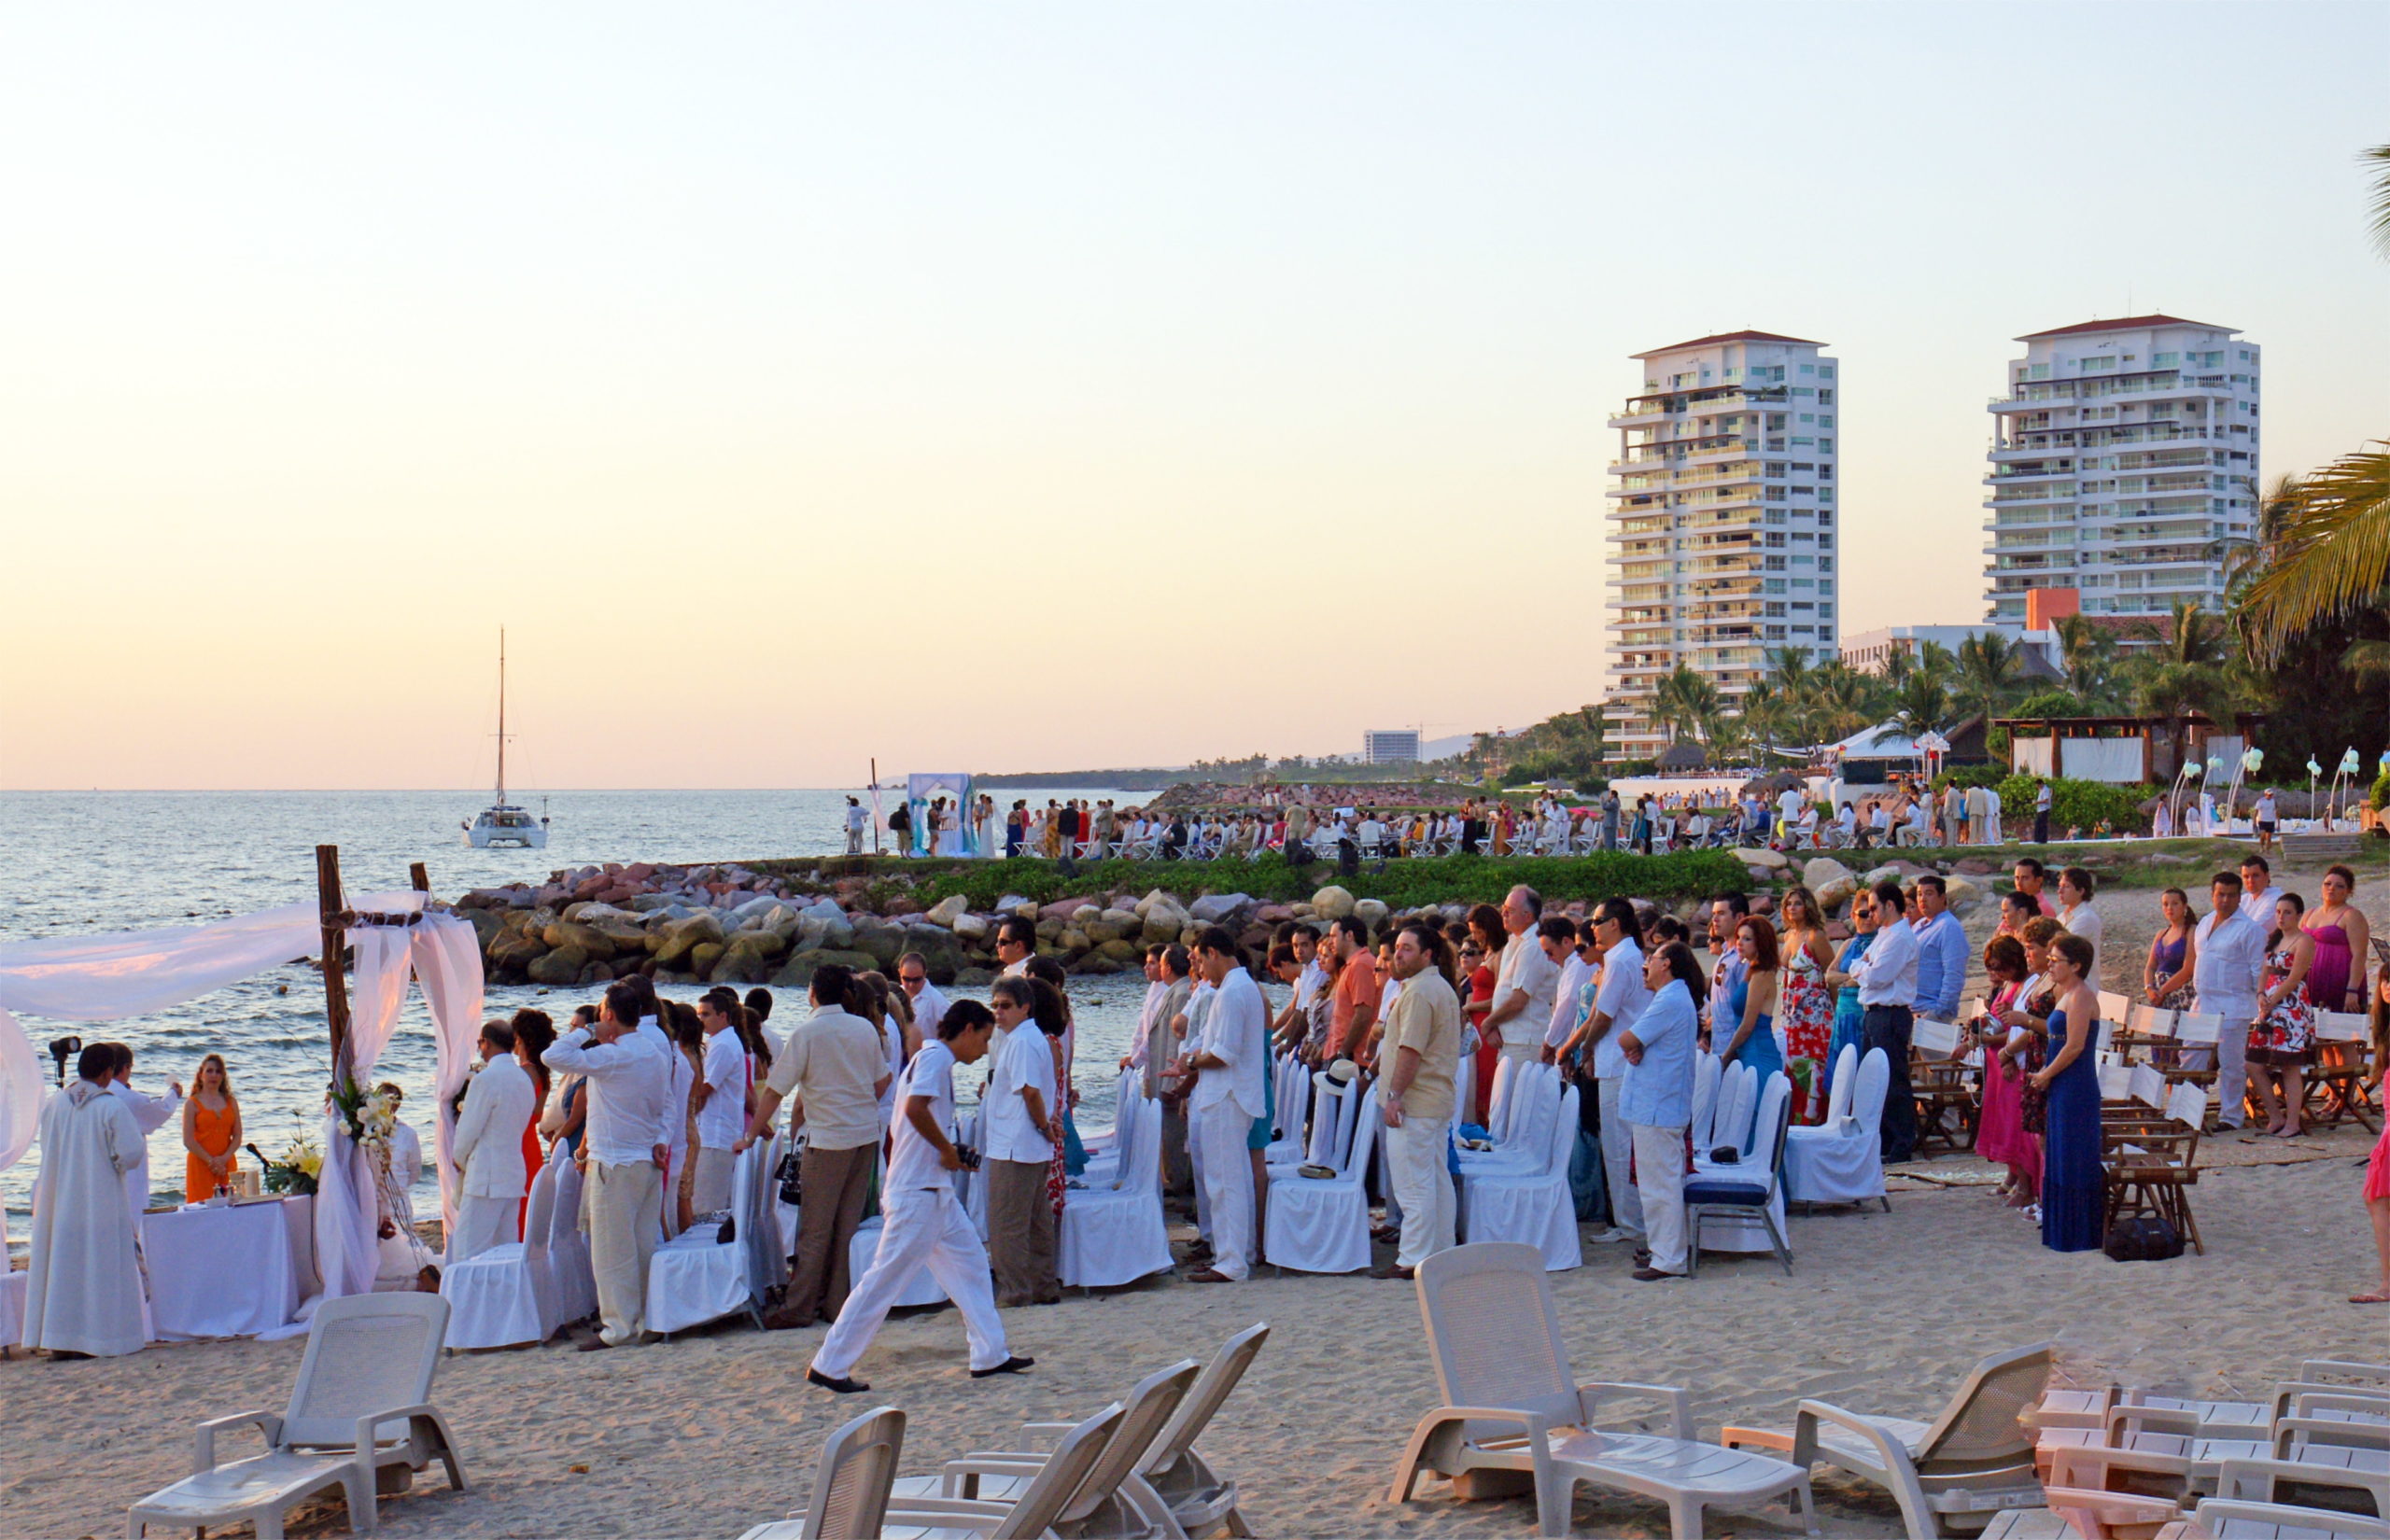 A beach wedding, Puerto Vallarta style.